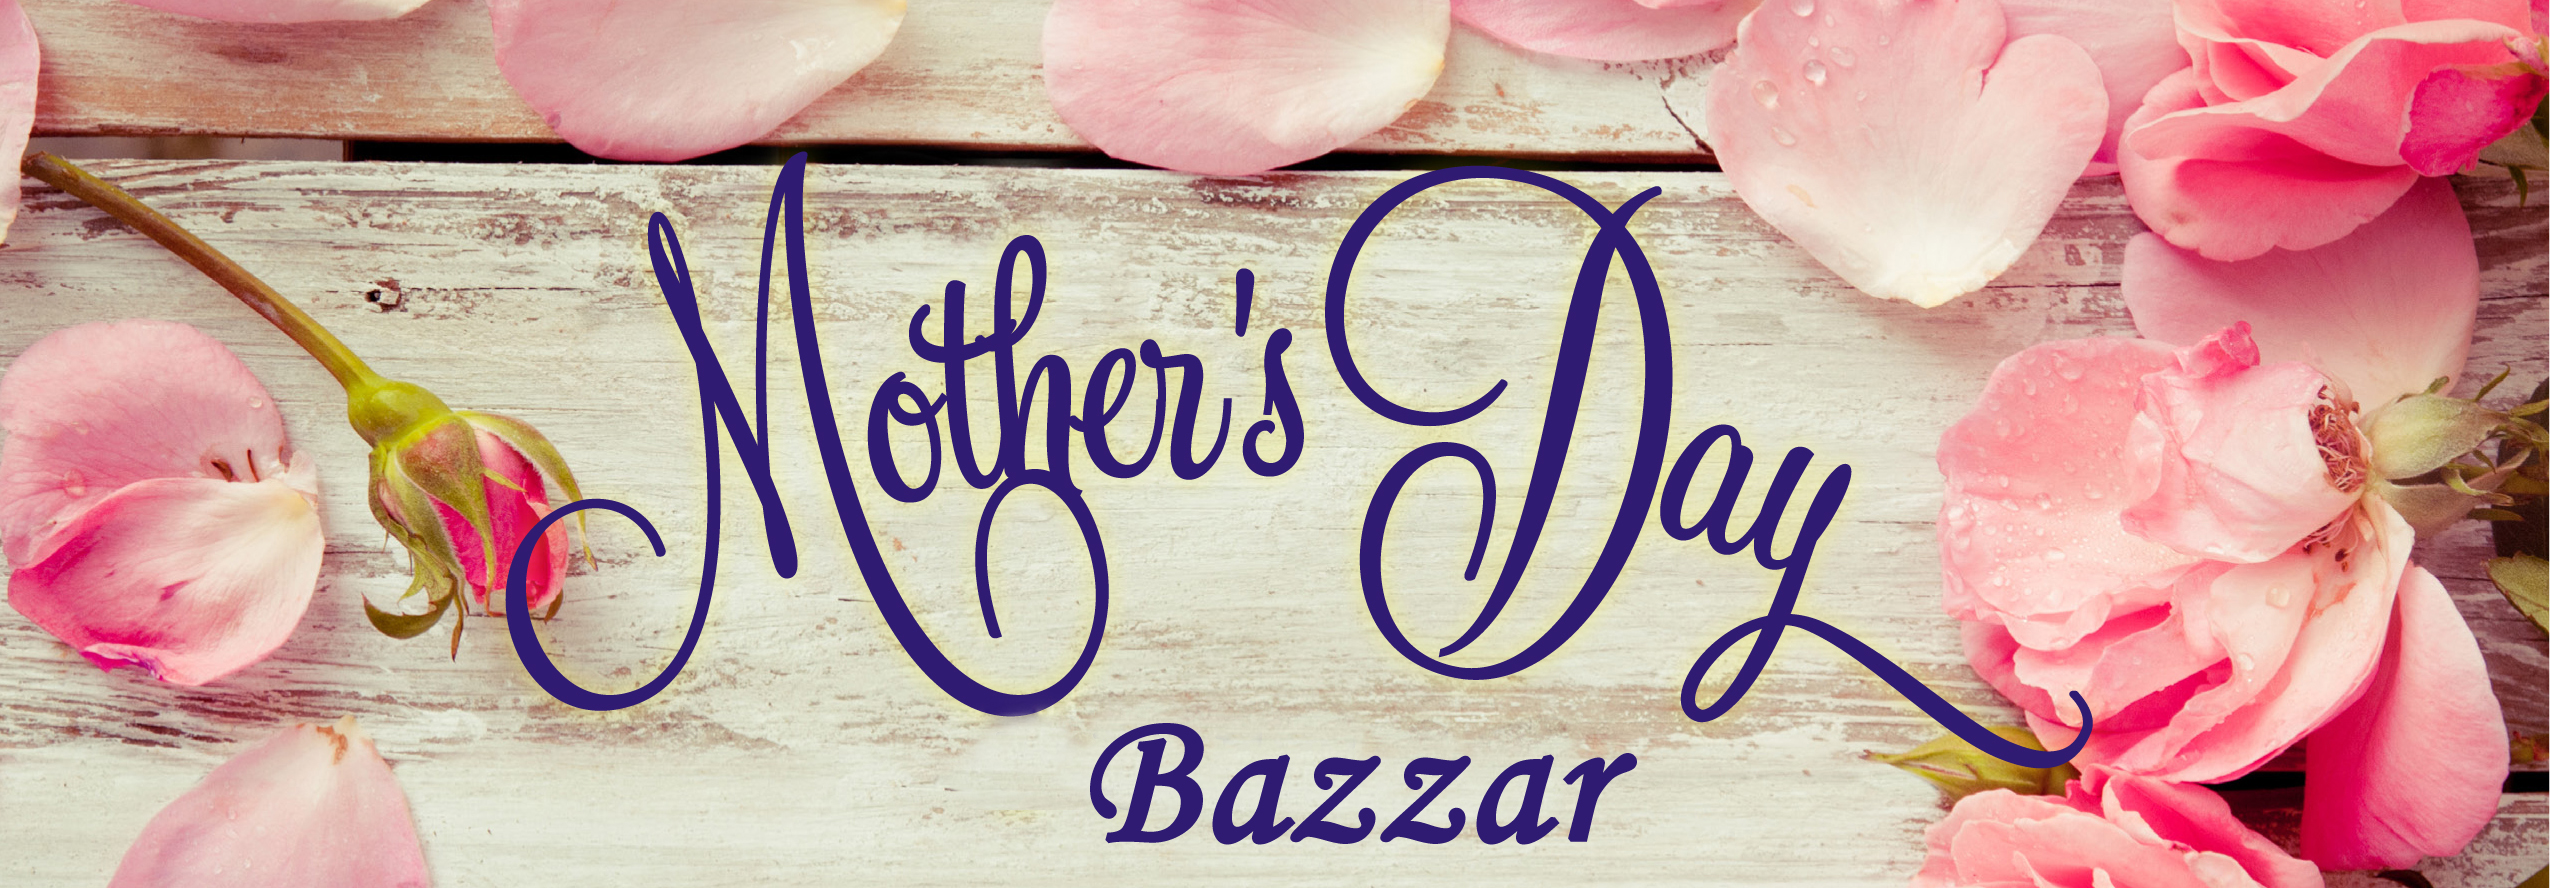 Mothers day bazaar